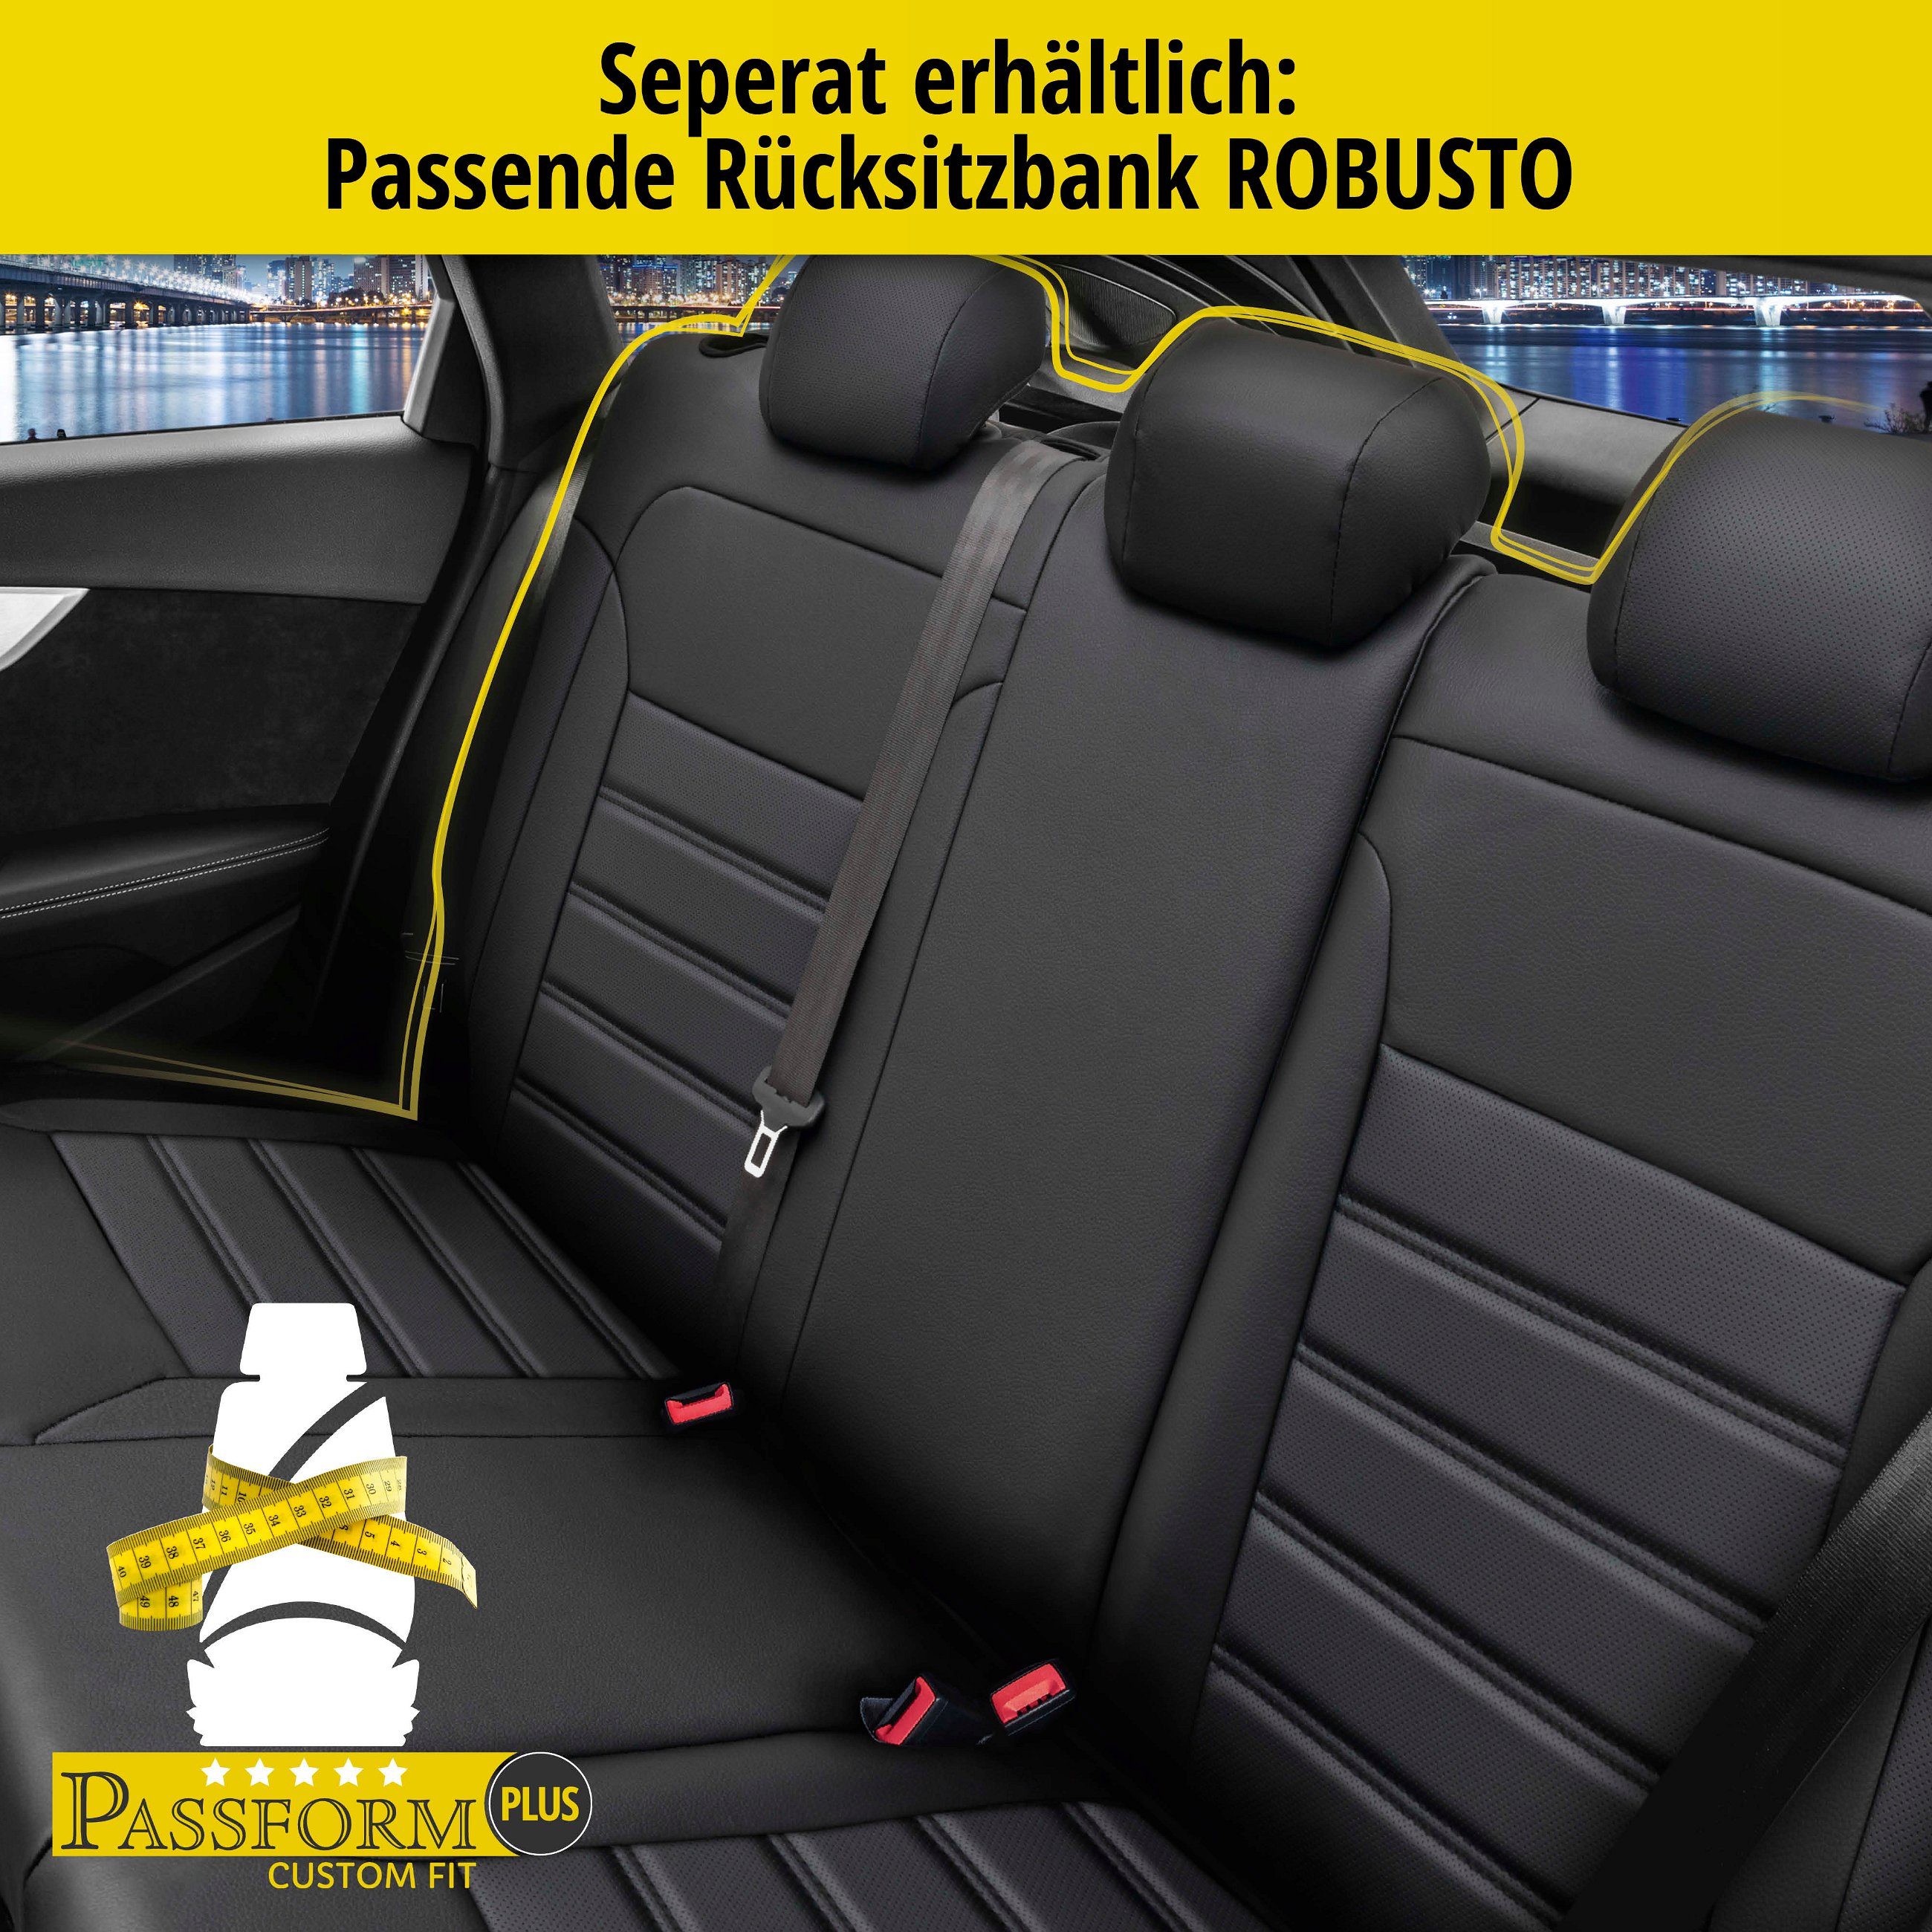 Passform Sitzbezug Robusto für BMW X1 (E84) 03/2009-06/2015, 2 Einzelsitzbezüge für Normalsitze